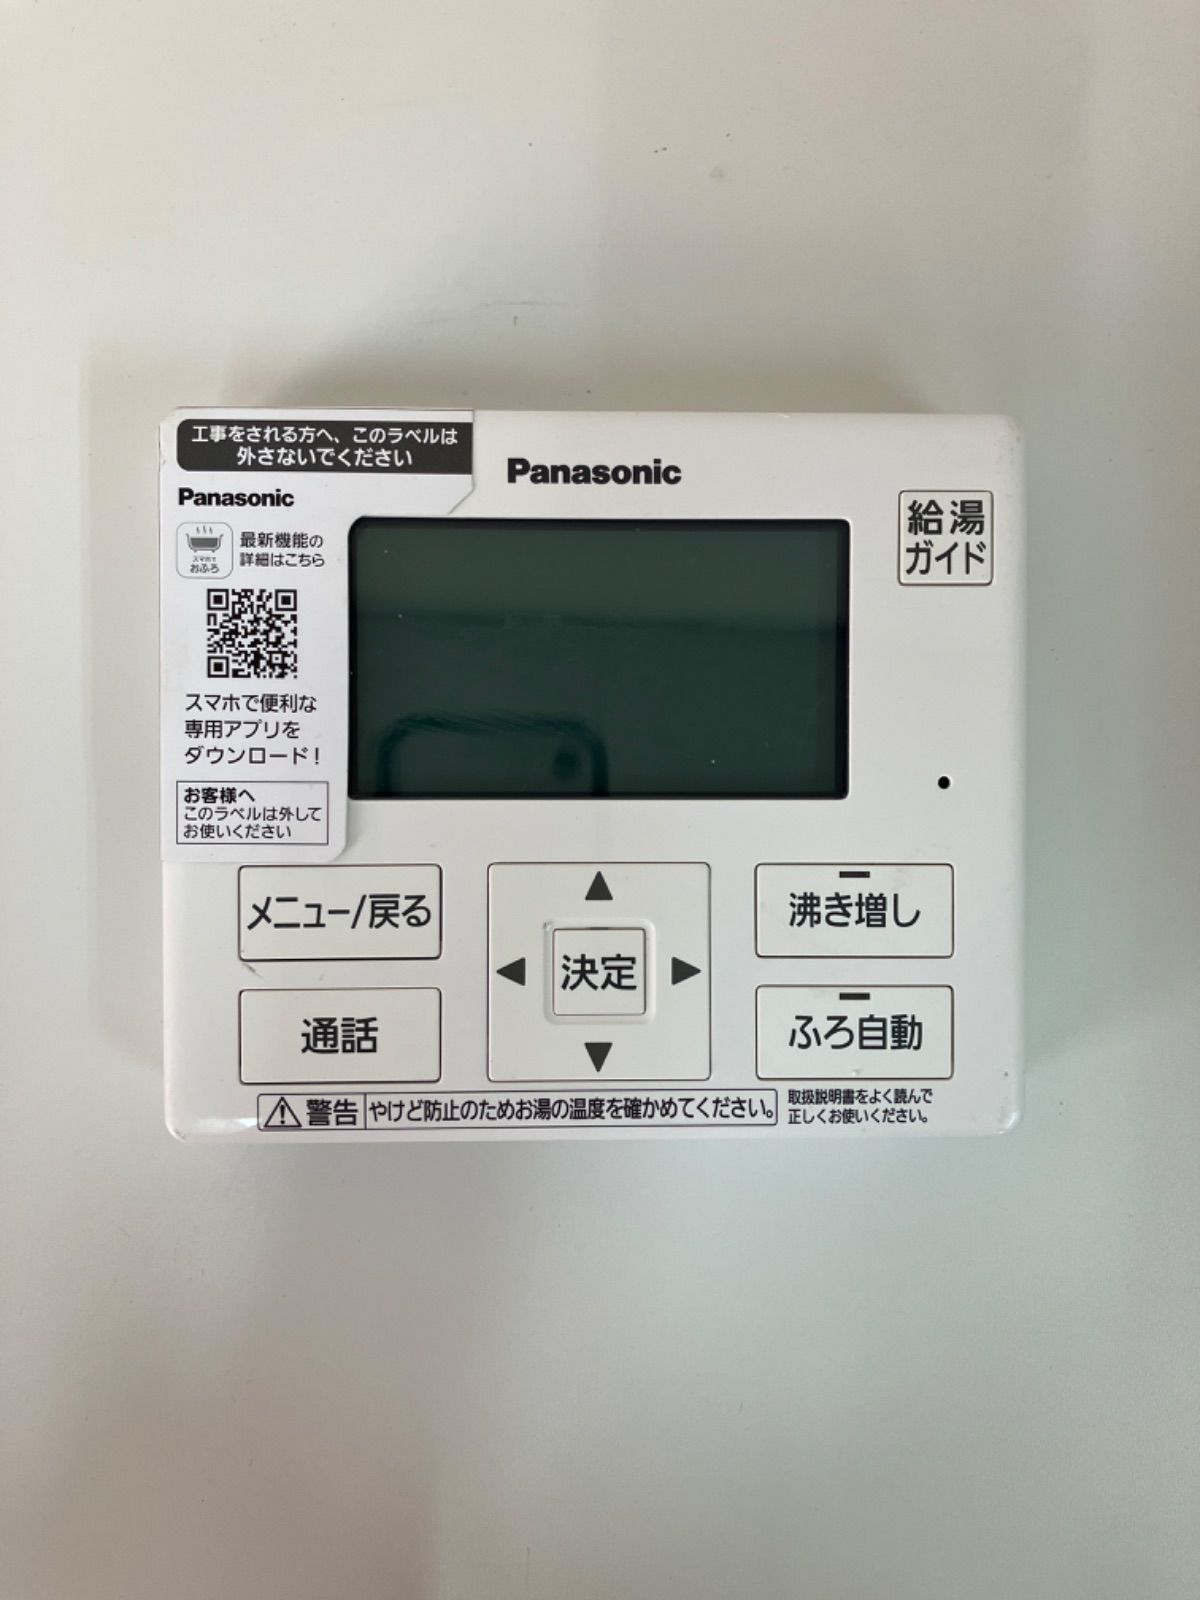 美品 Panasonic 給湯器リモコン HE-TQWKM パナソニック - メルカリ